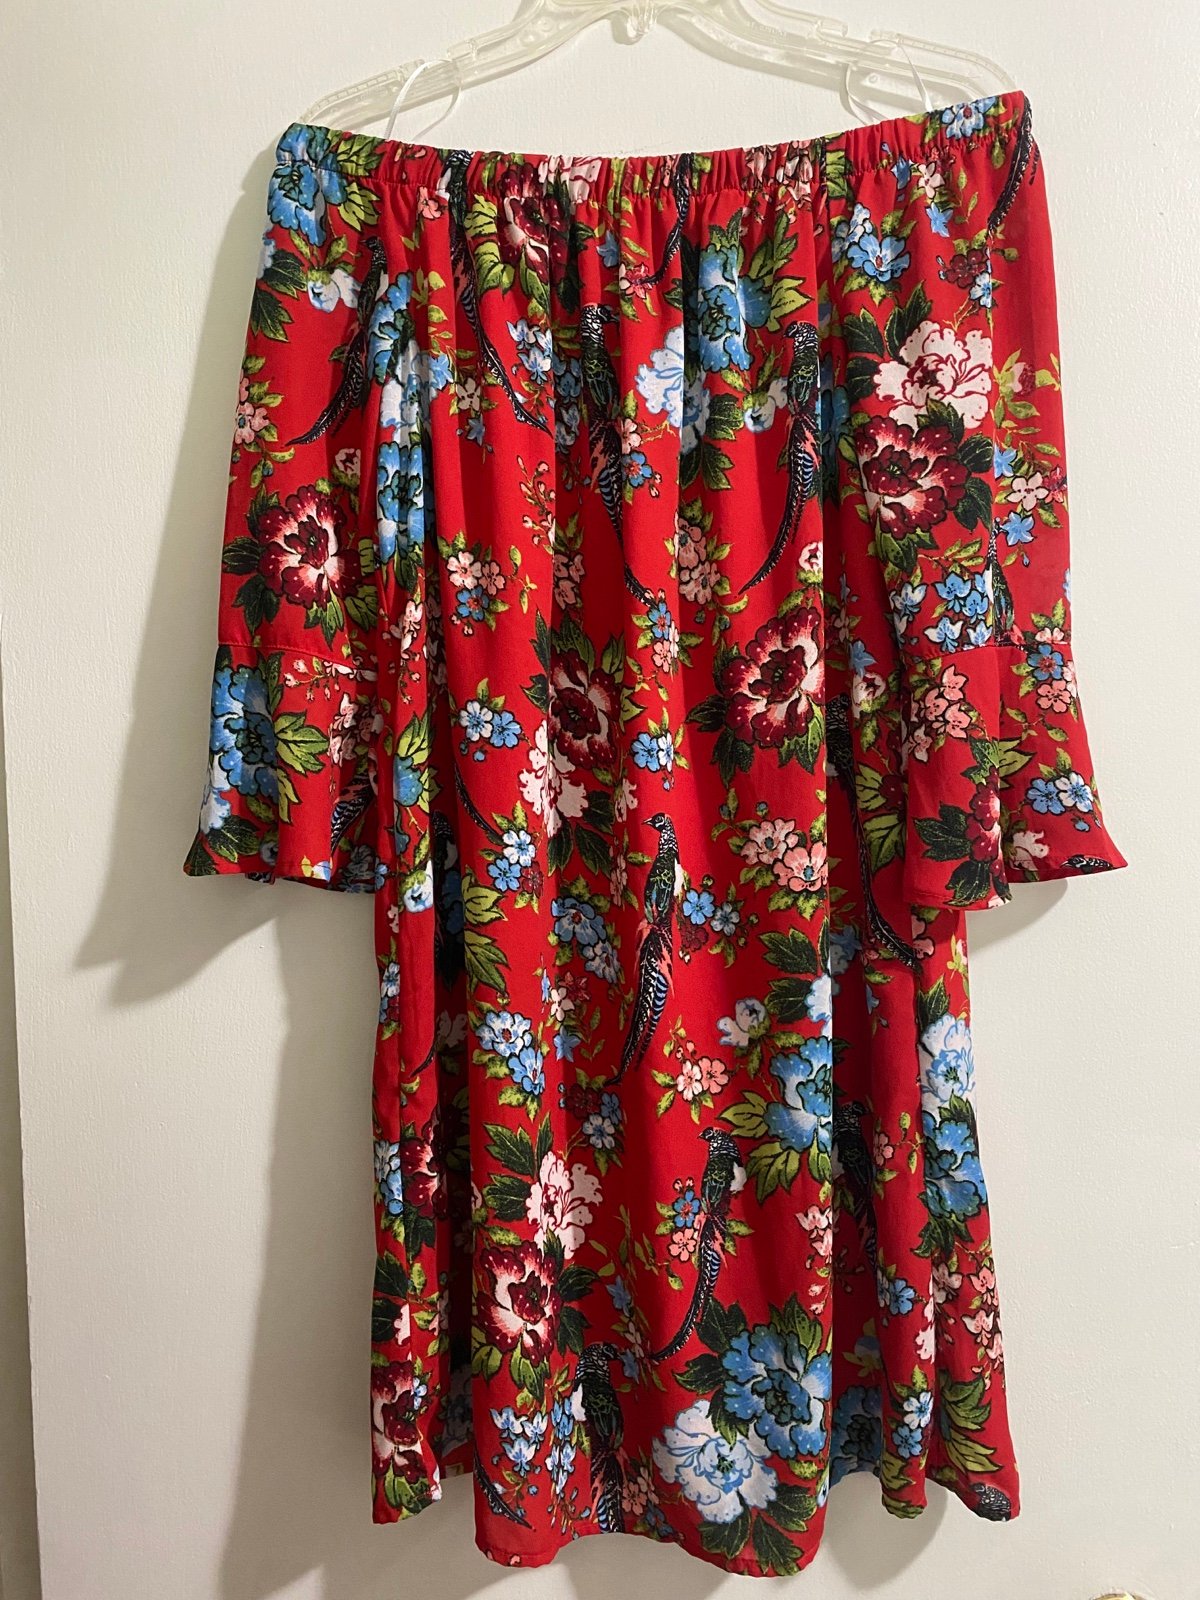 Custom Off-the-Shoulder Short Red Floral Dress LS85Lql9